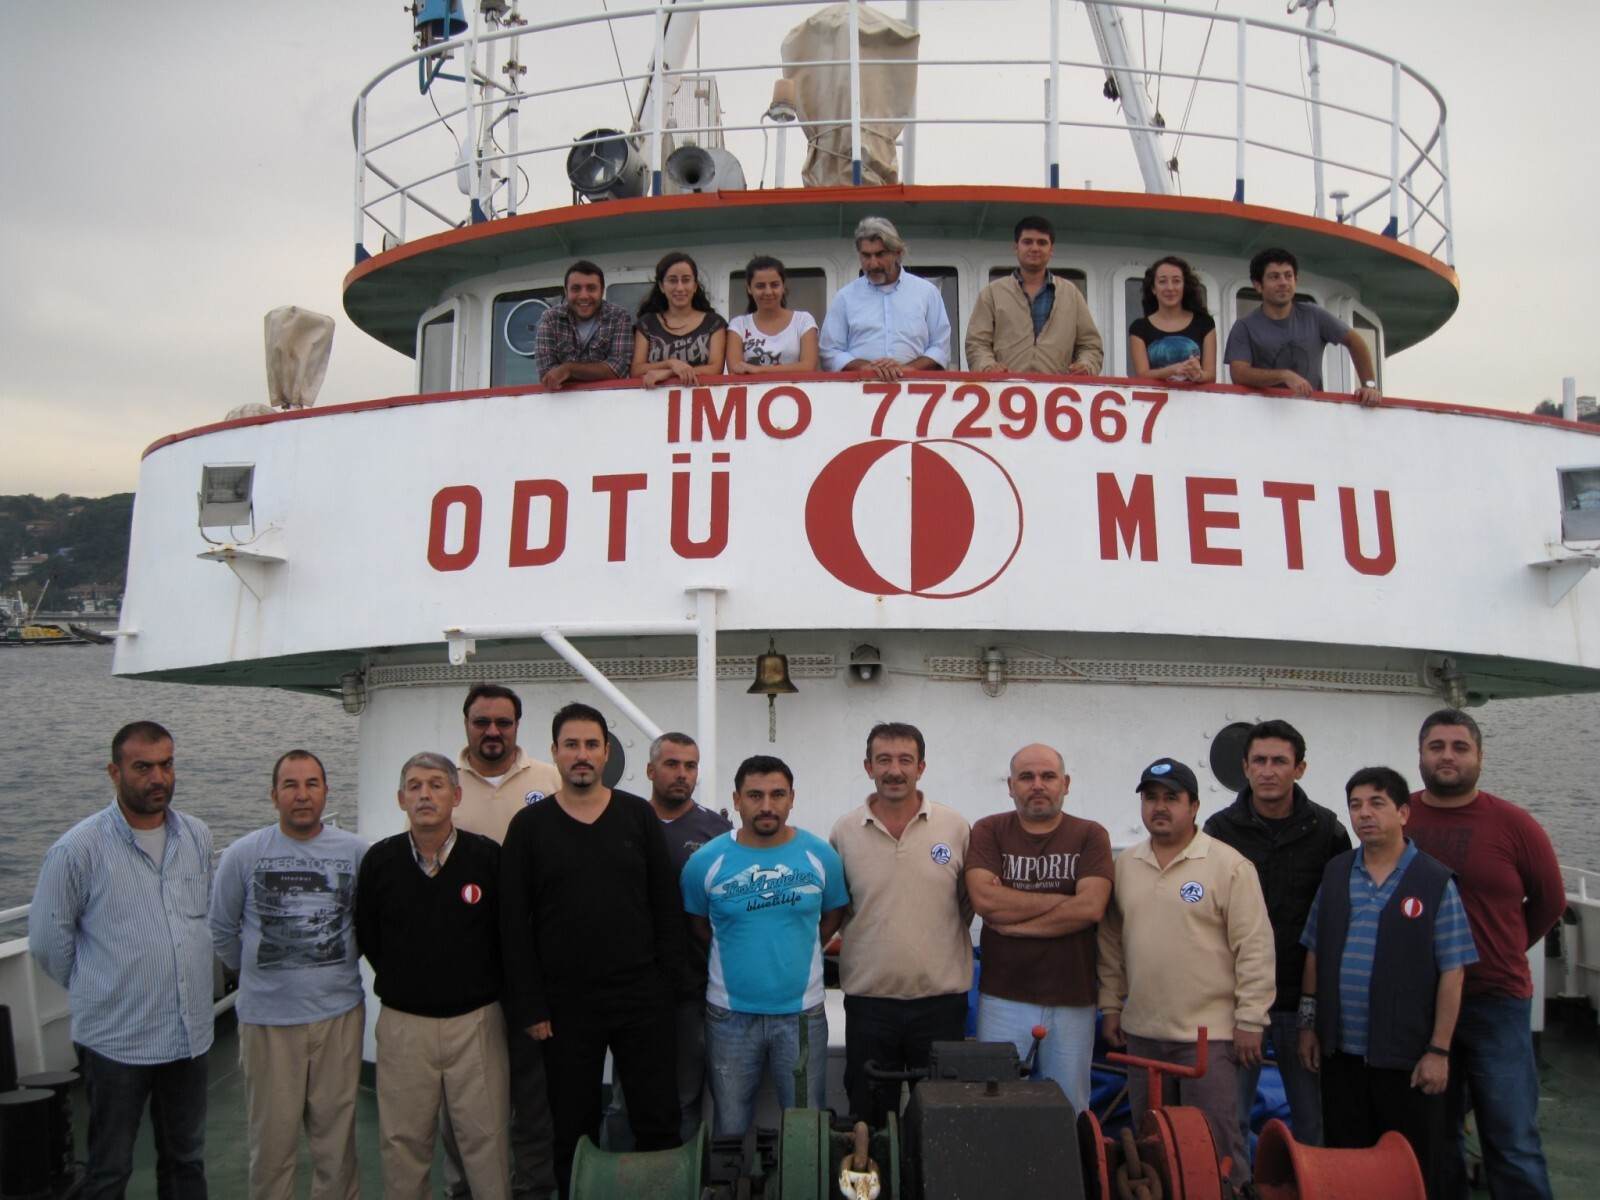 ODTÜ Deniz Bilimleri Enstitüsü